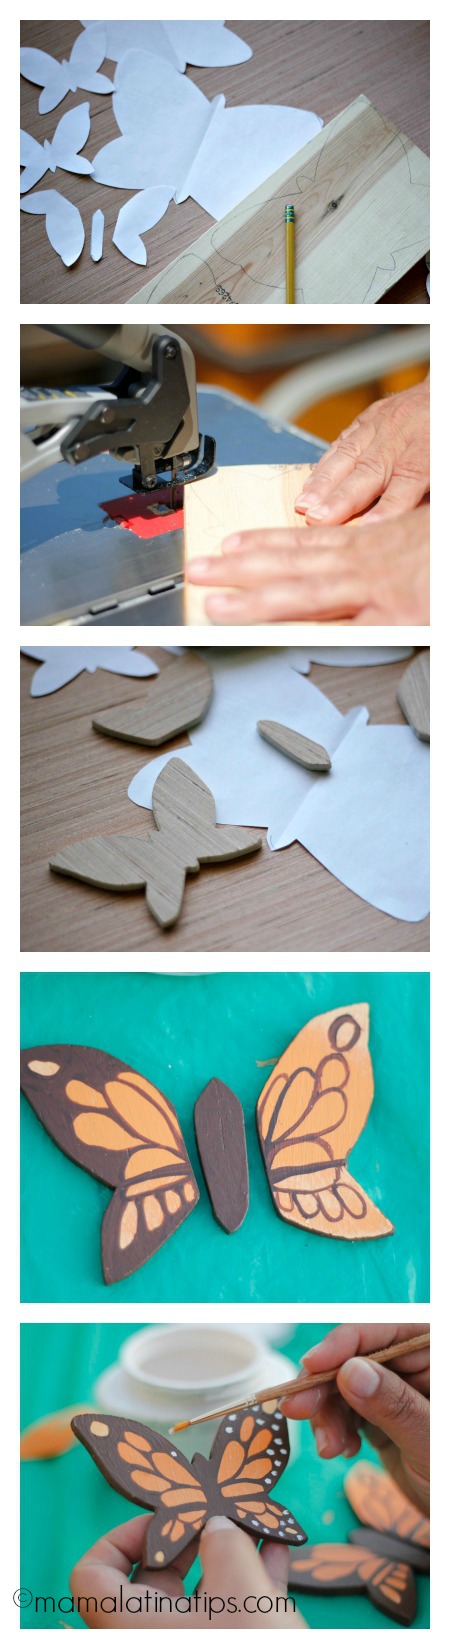 How to make wooden butterflies - mamalatinatips.com